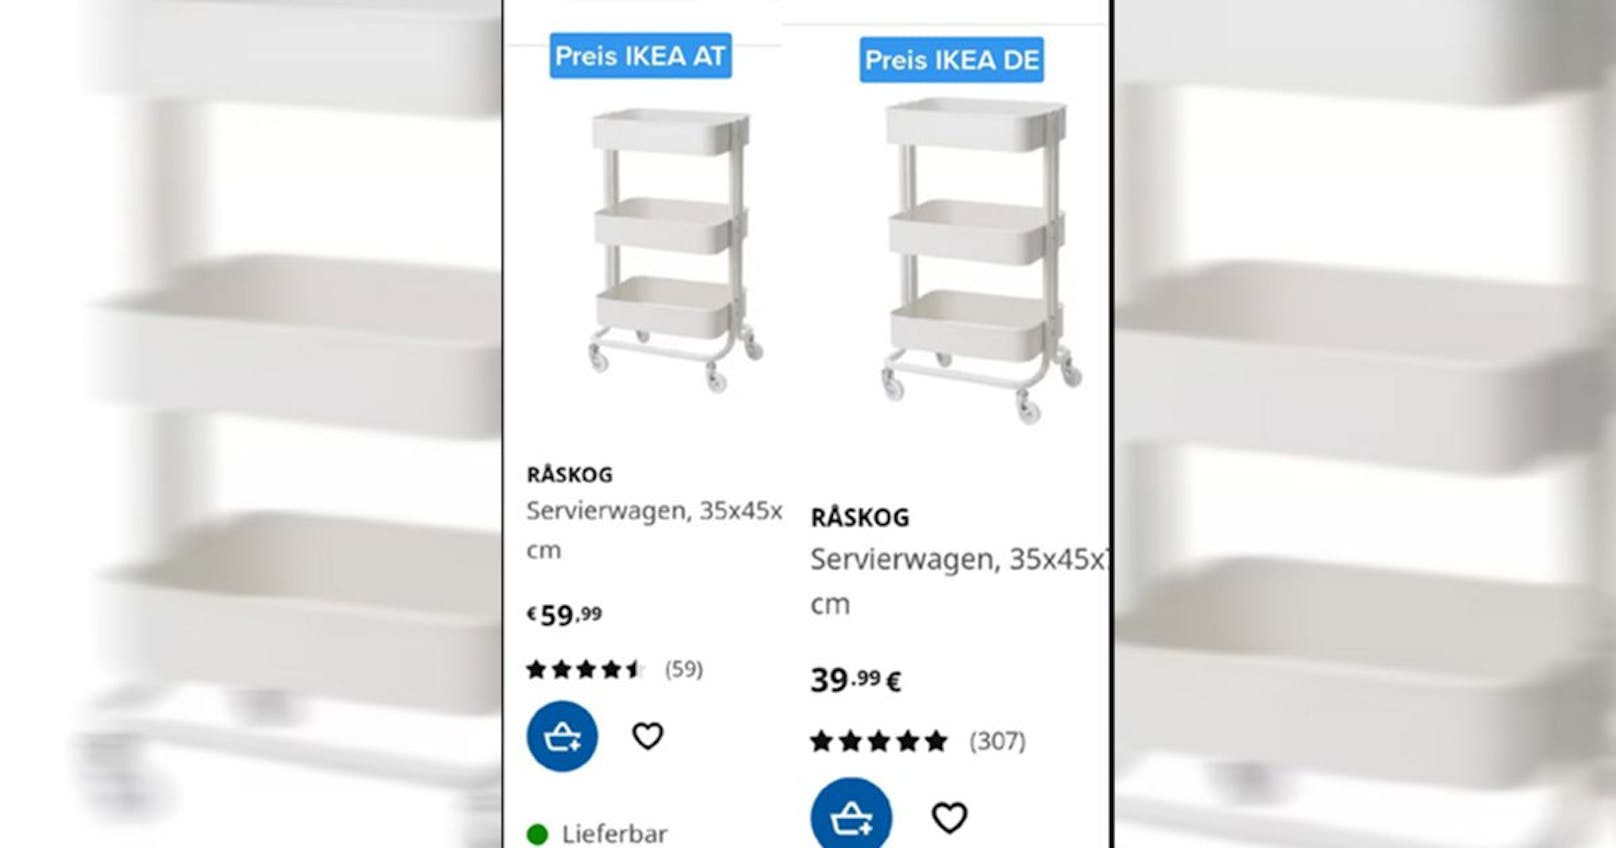 20 Euro teurer – Wiener wundert sich über Ikea-Preis